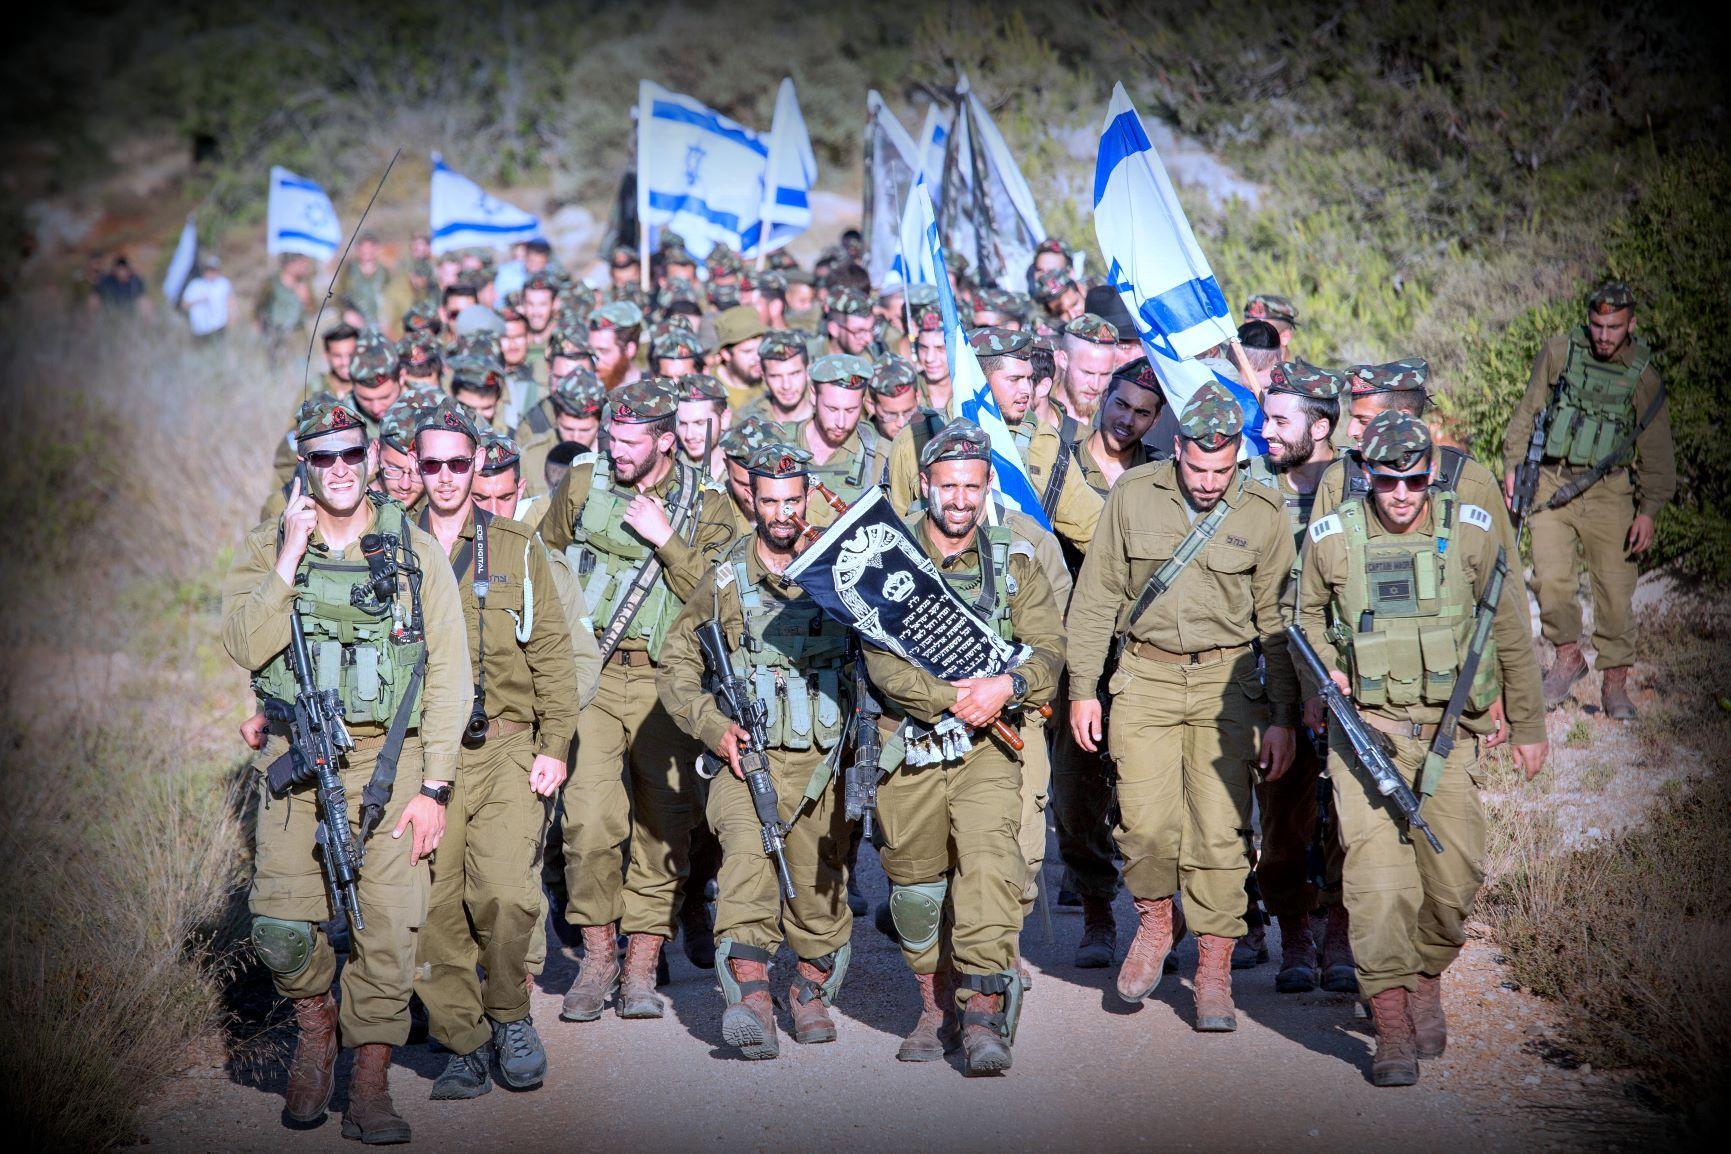 ماذا نعرف عن كتيبة "نيتسح يهودا" العسكرية الإسرائيلية المُهددة بعقوبات أمريكية؟